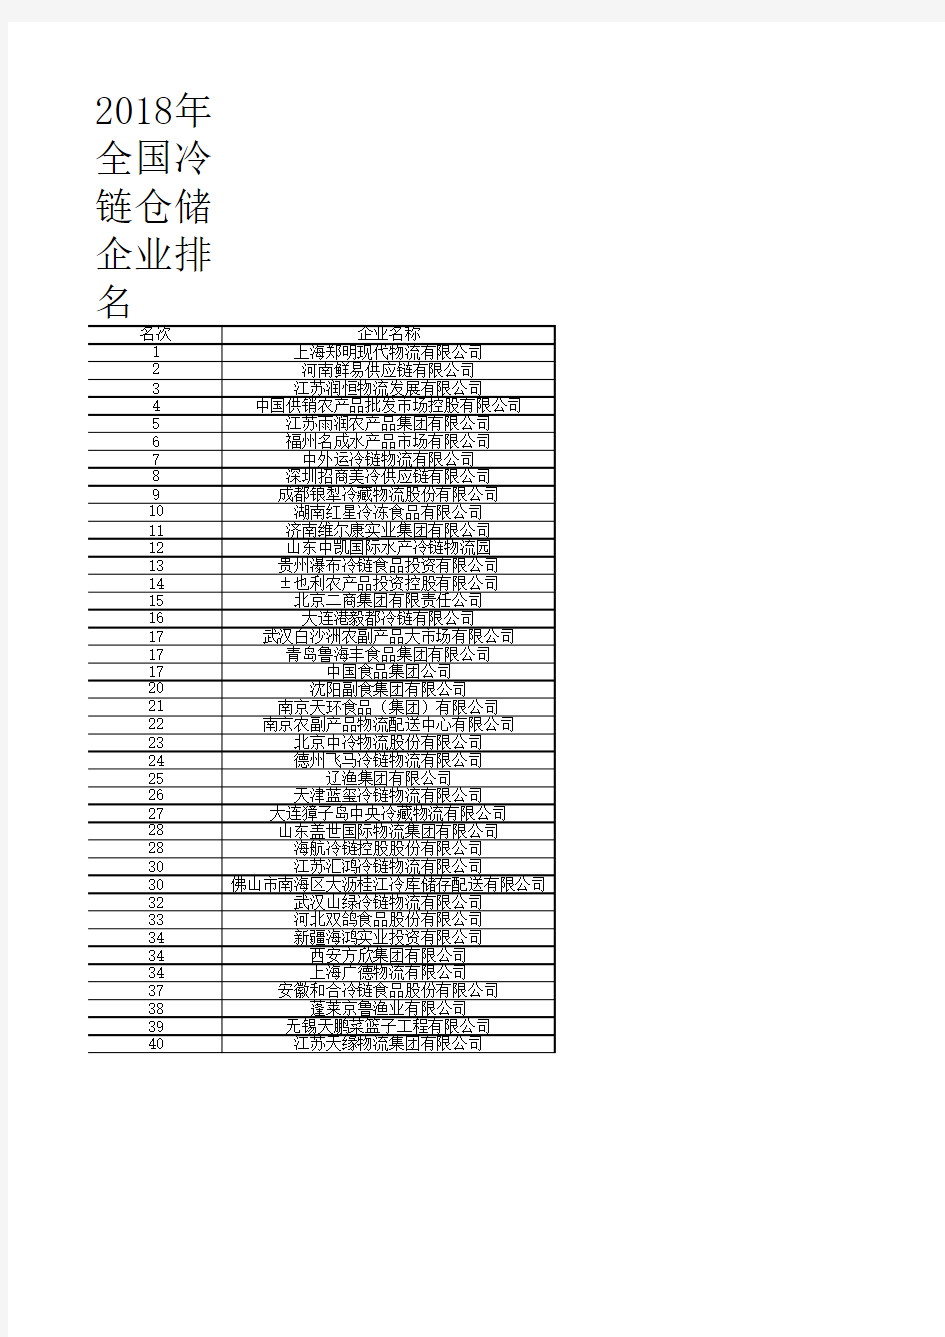 中国物流年鉴全国各省市区统计数据：2018年全国冷链仓储企业排名